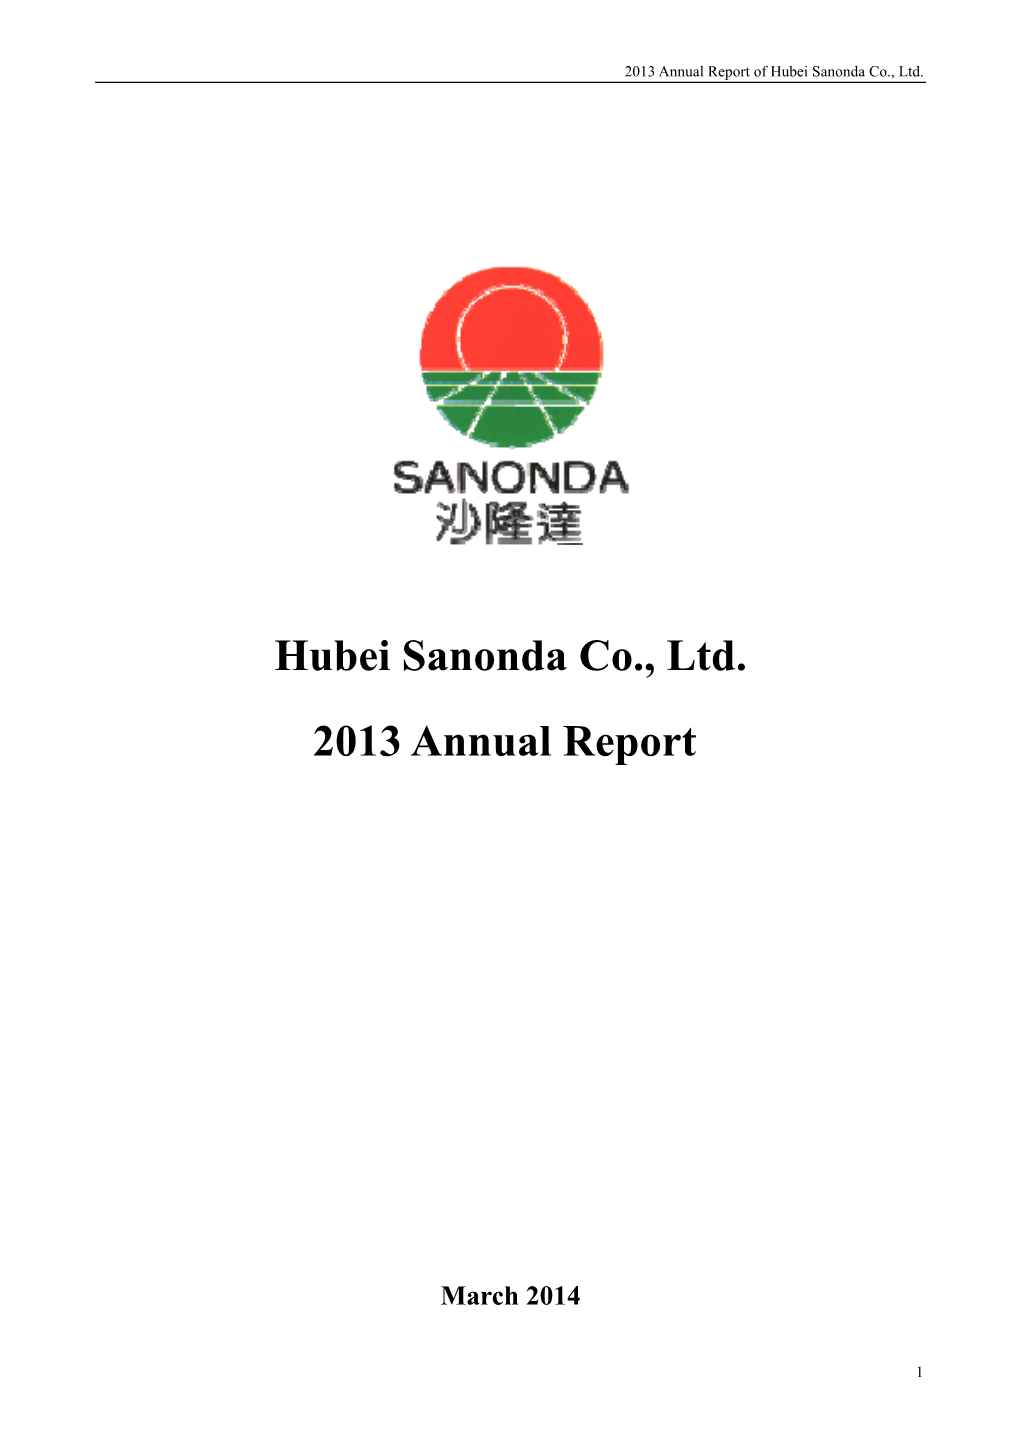 Hubei Sanonda Co., Ltd. 2013 Annual Report